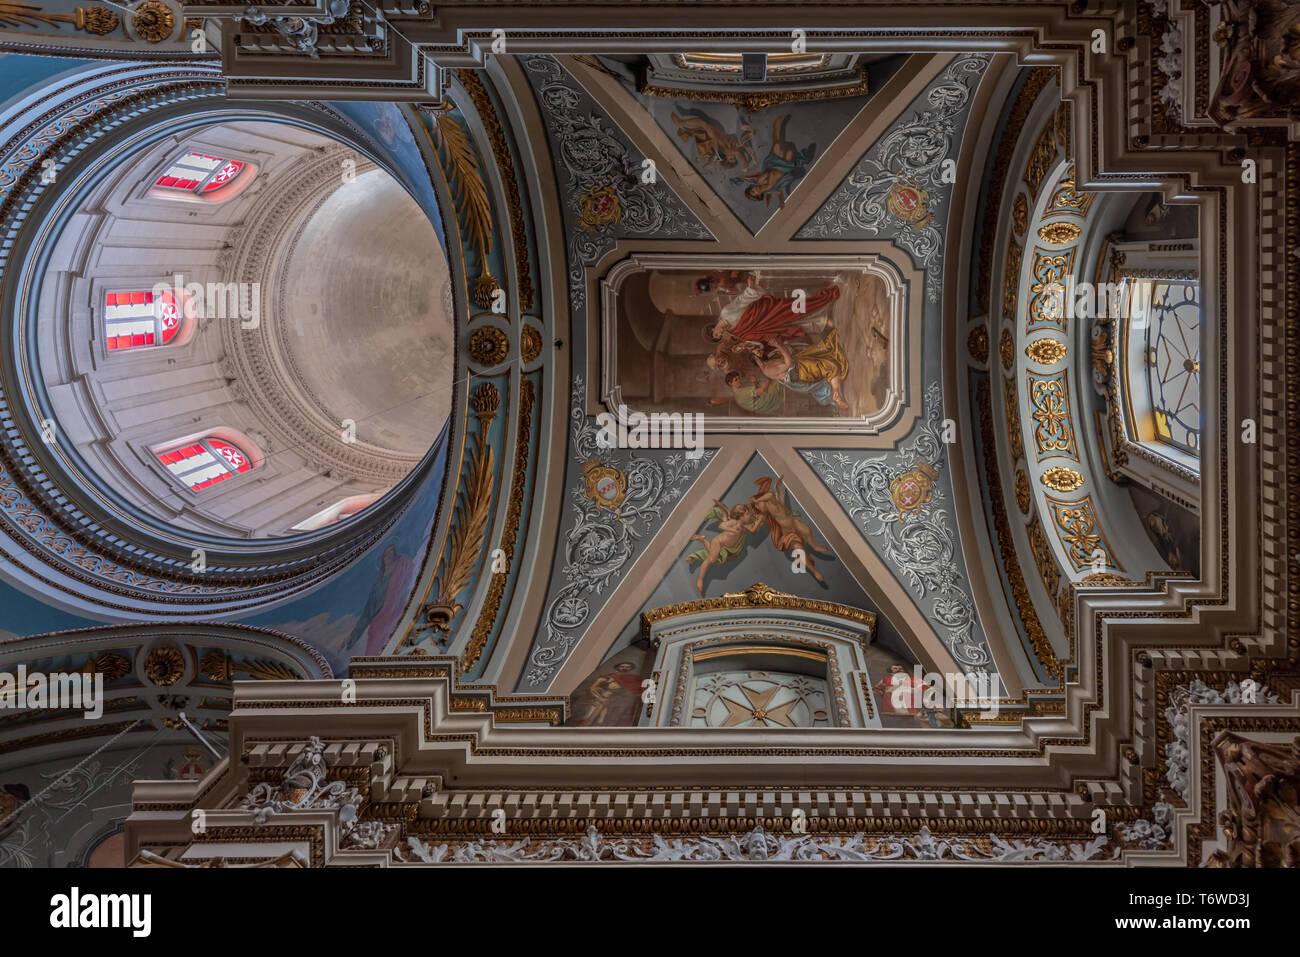 Le dôme et le plafond voûté orné de tonneaux de la collégiale baroque romaine Saint-Laurent du XVIIe siècle de Lorenzo Gafa à il-Birgu, Malte Banque D'Images